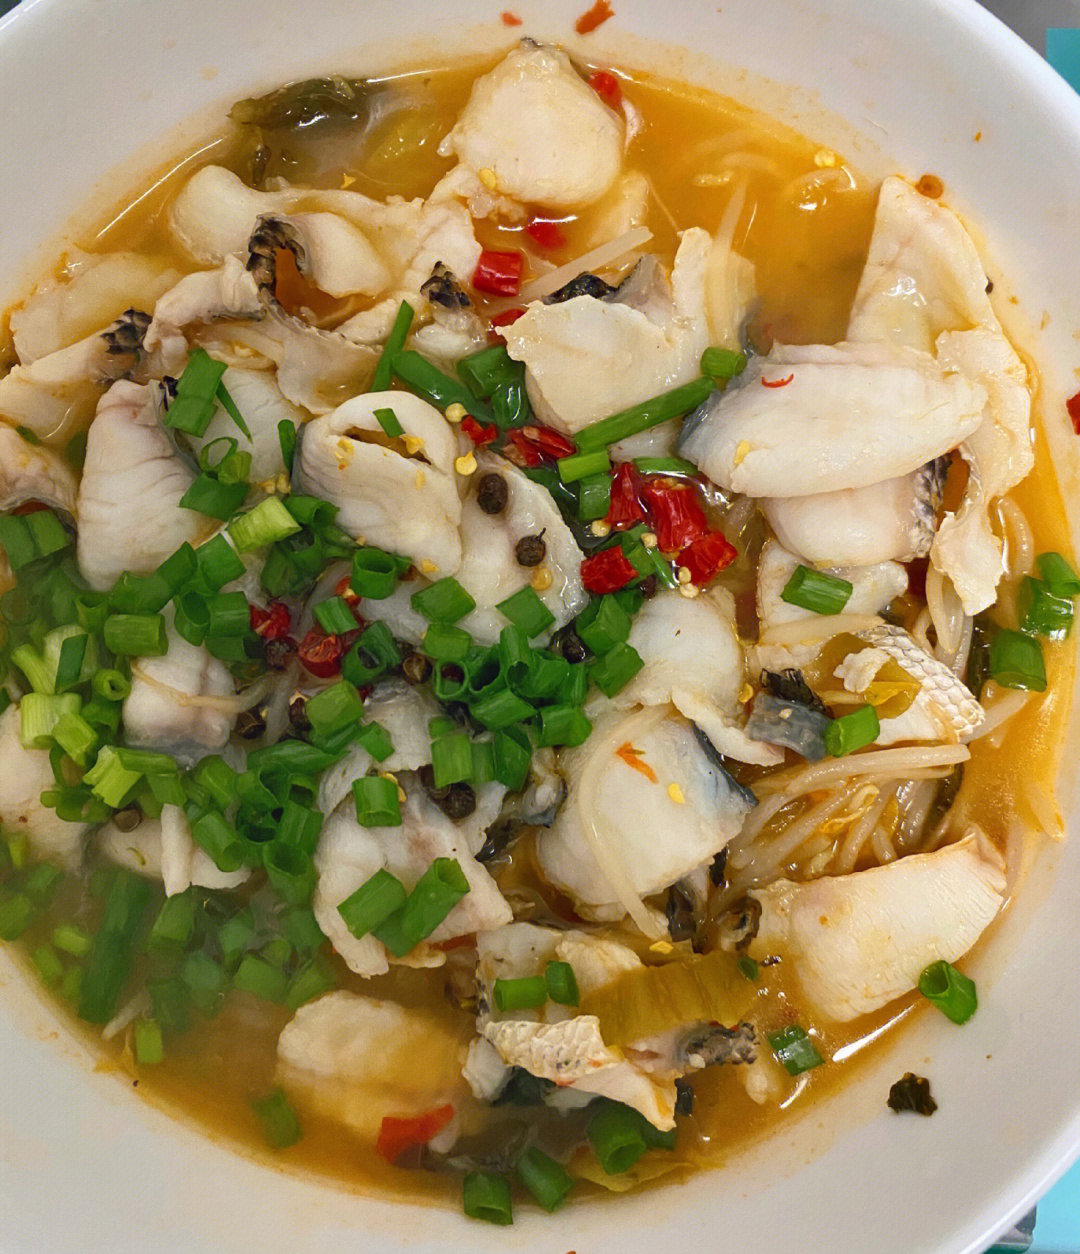 懒人版酸菜鱼做法:超市买的鱼片放胡椒粉和盐蛋清搅拌均匀腌制10分钟